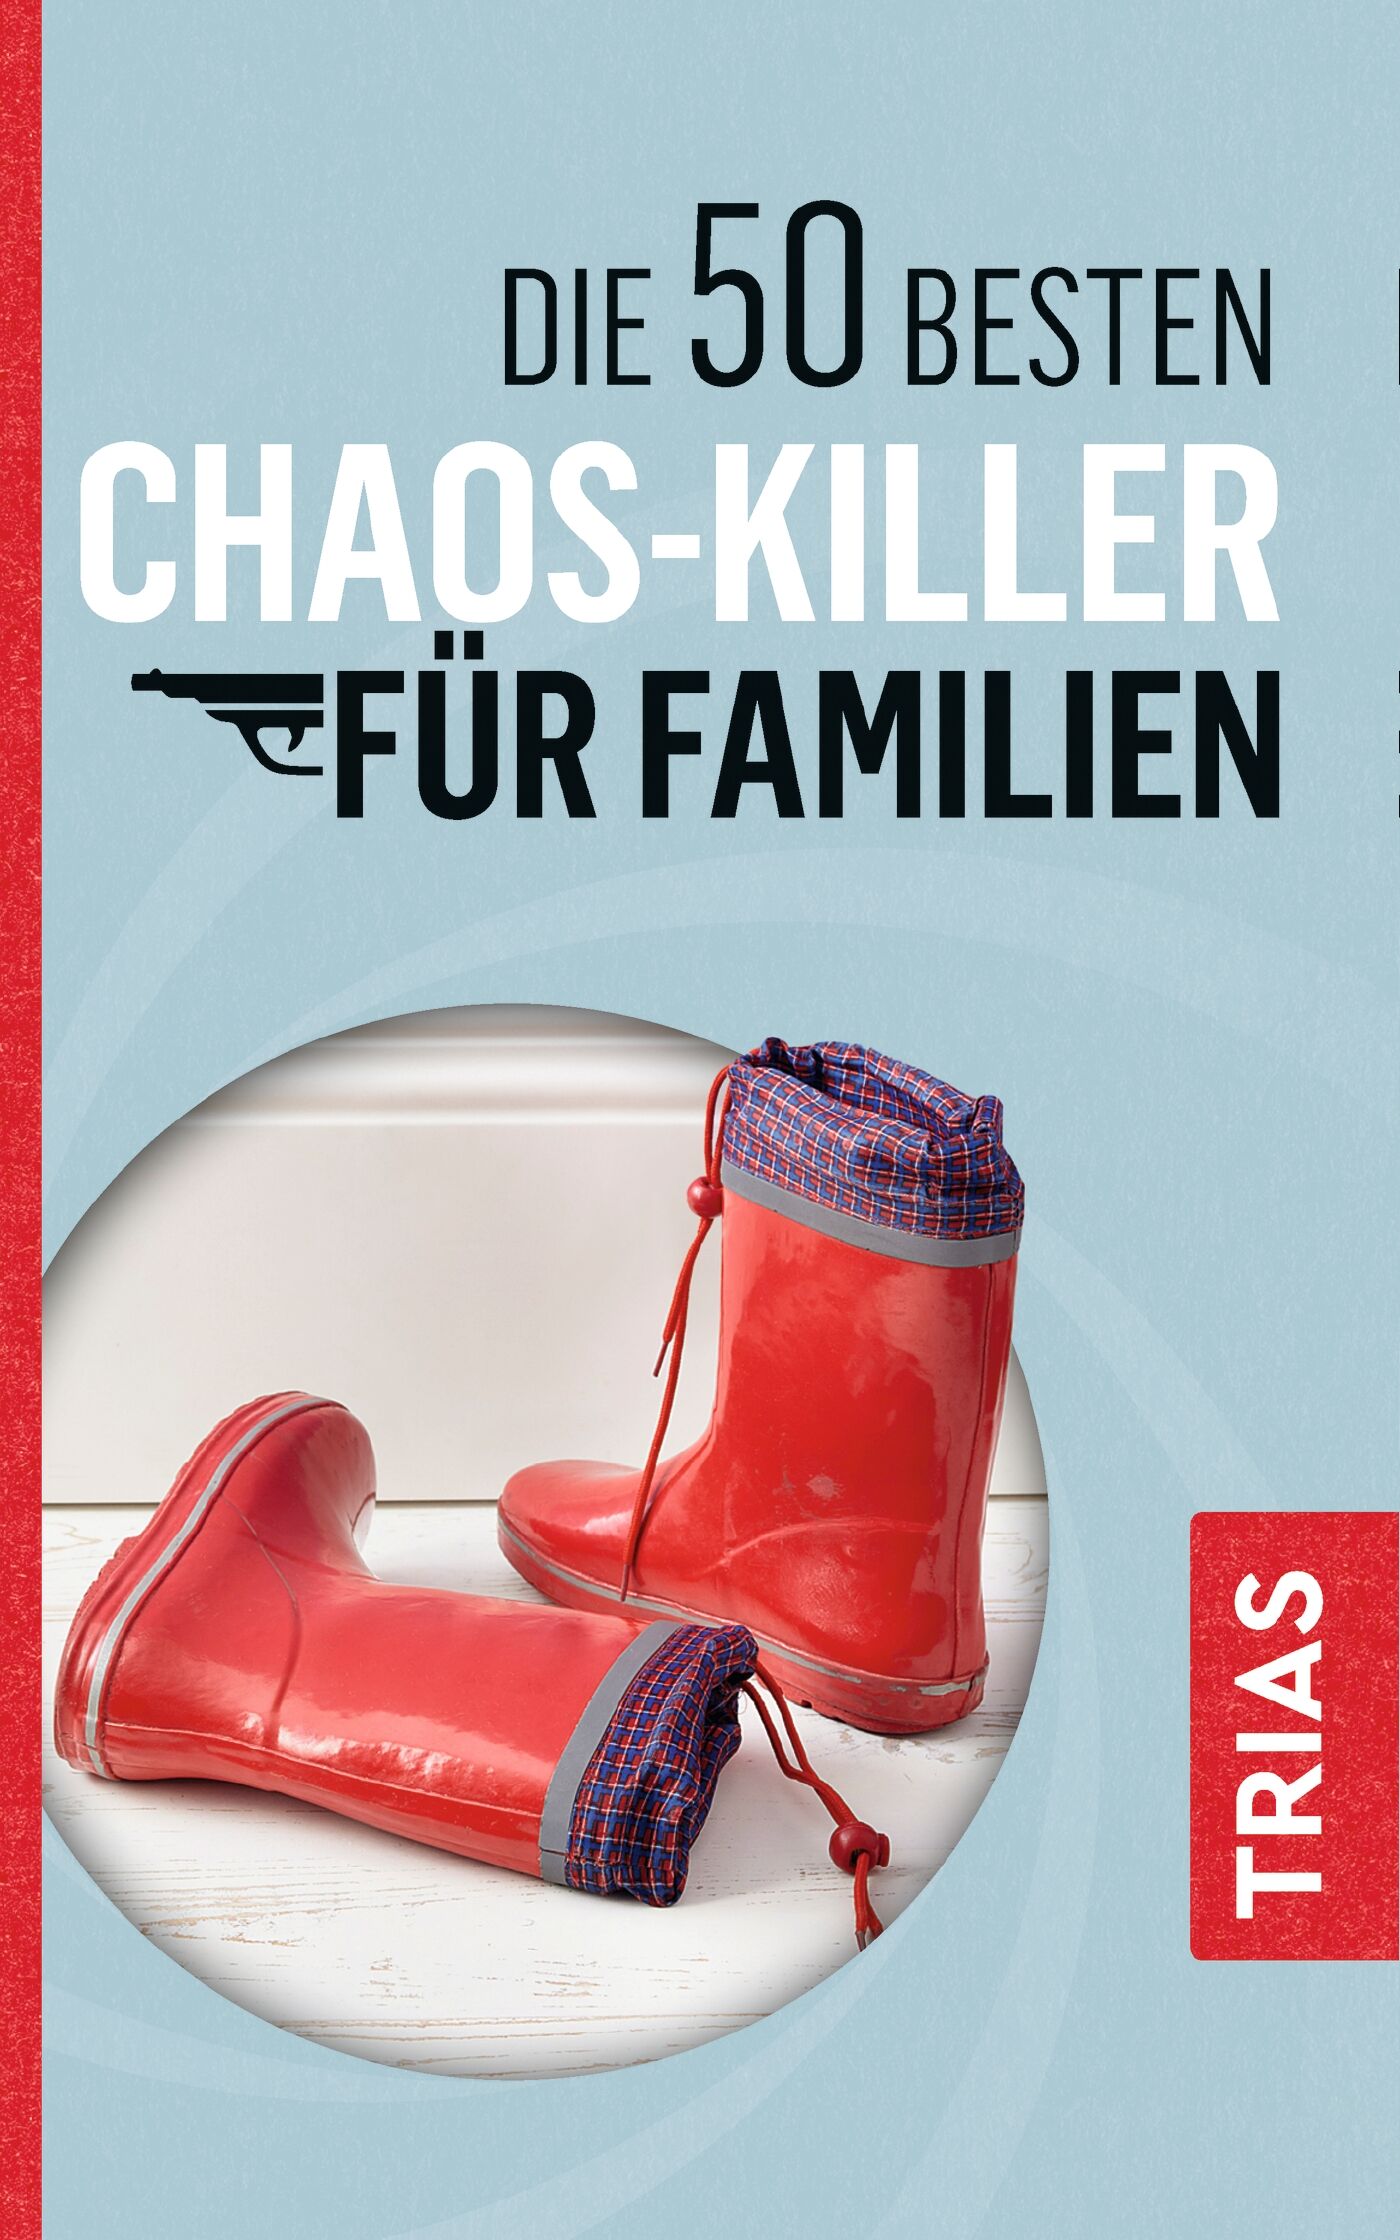 Die 50 besten Chaos-Killer für Familien, 9783432108728